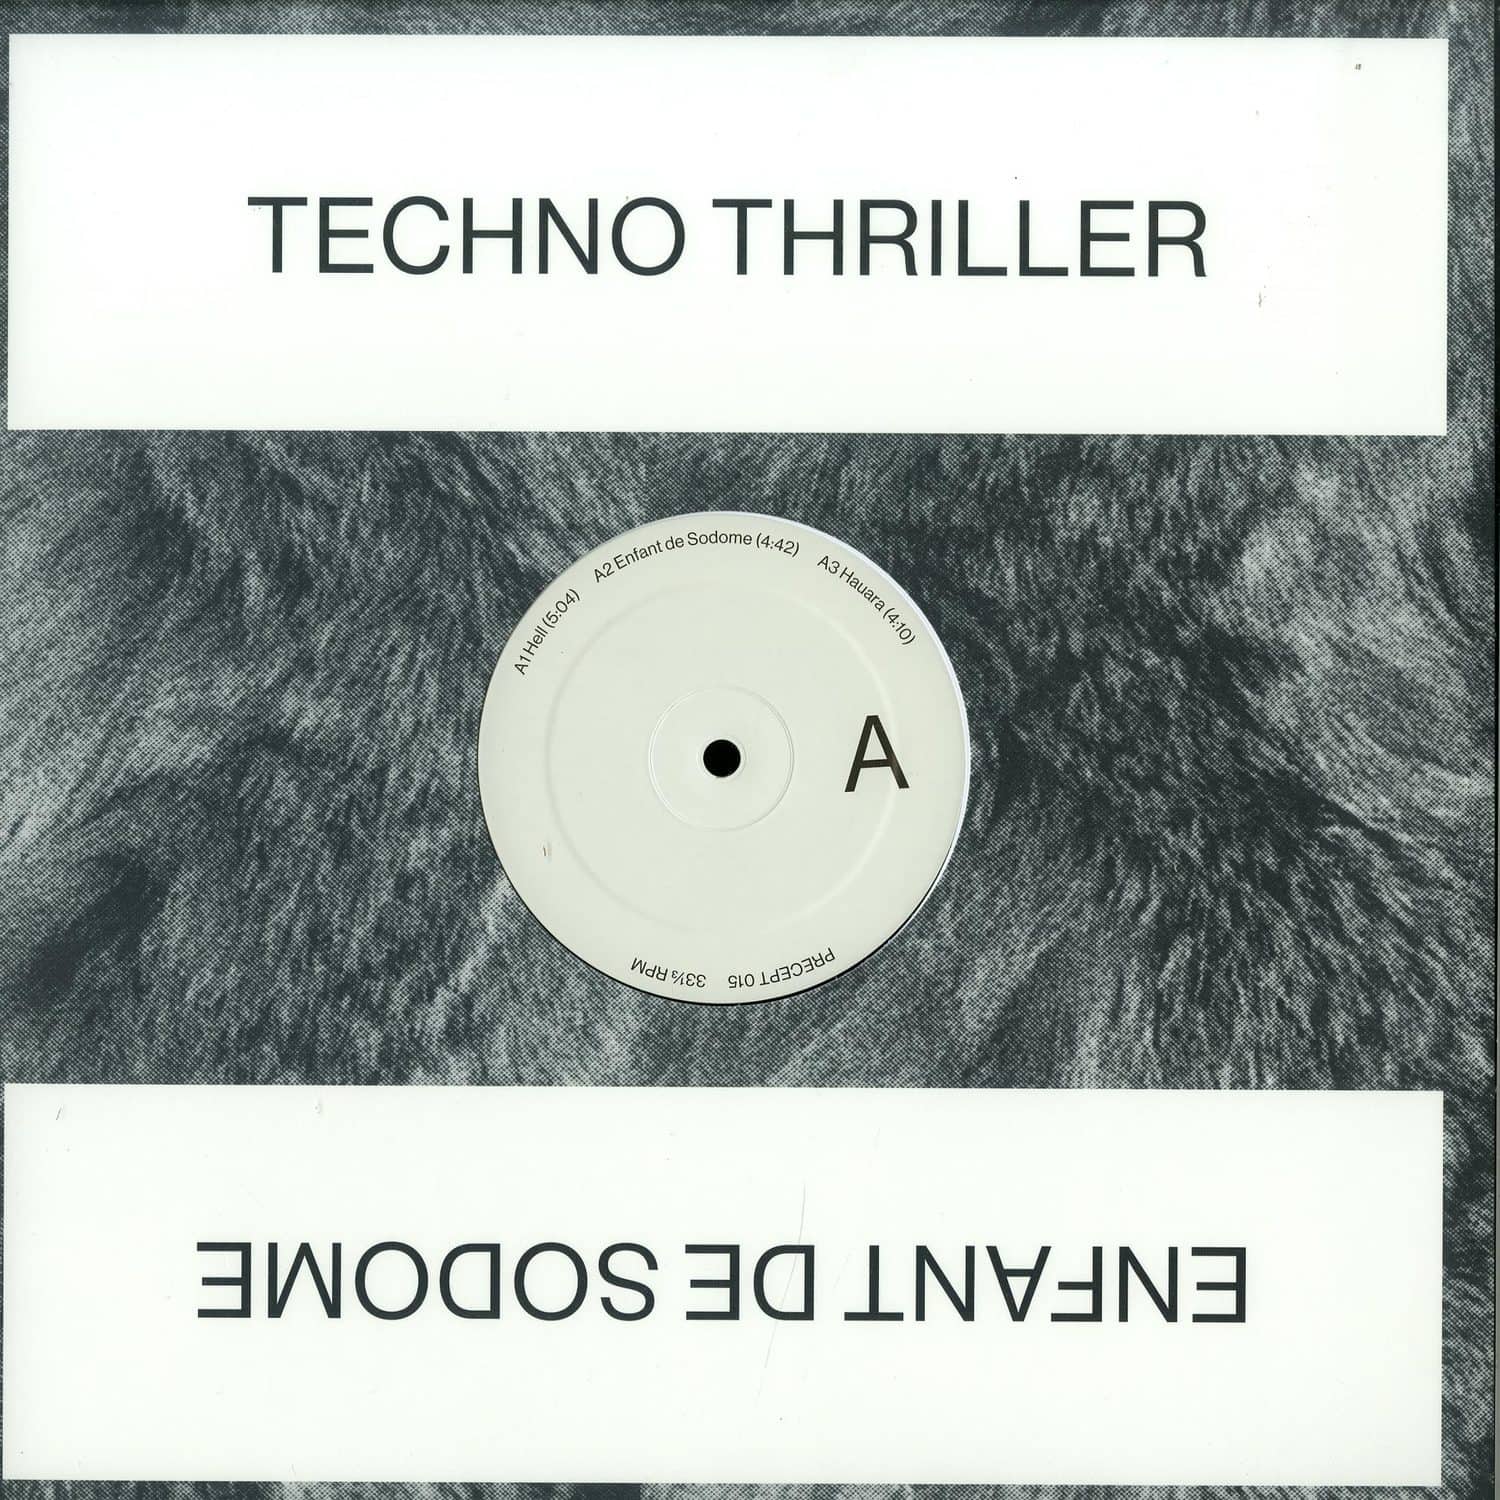 Techno Thriller - ENFANT DE SODOME EP